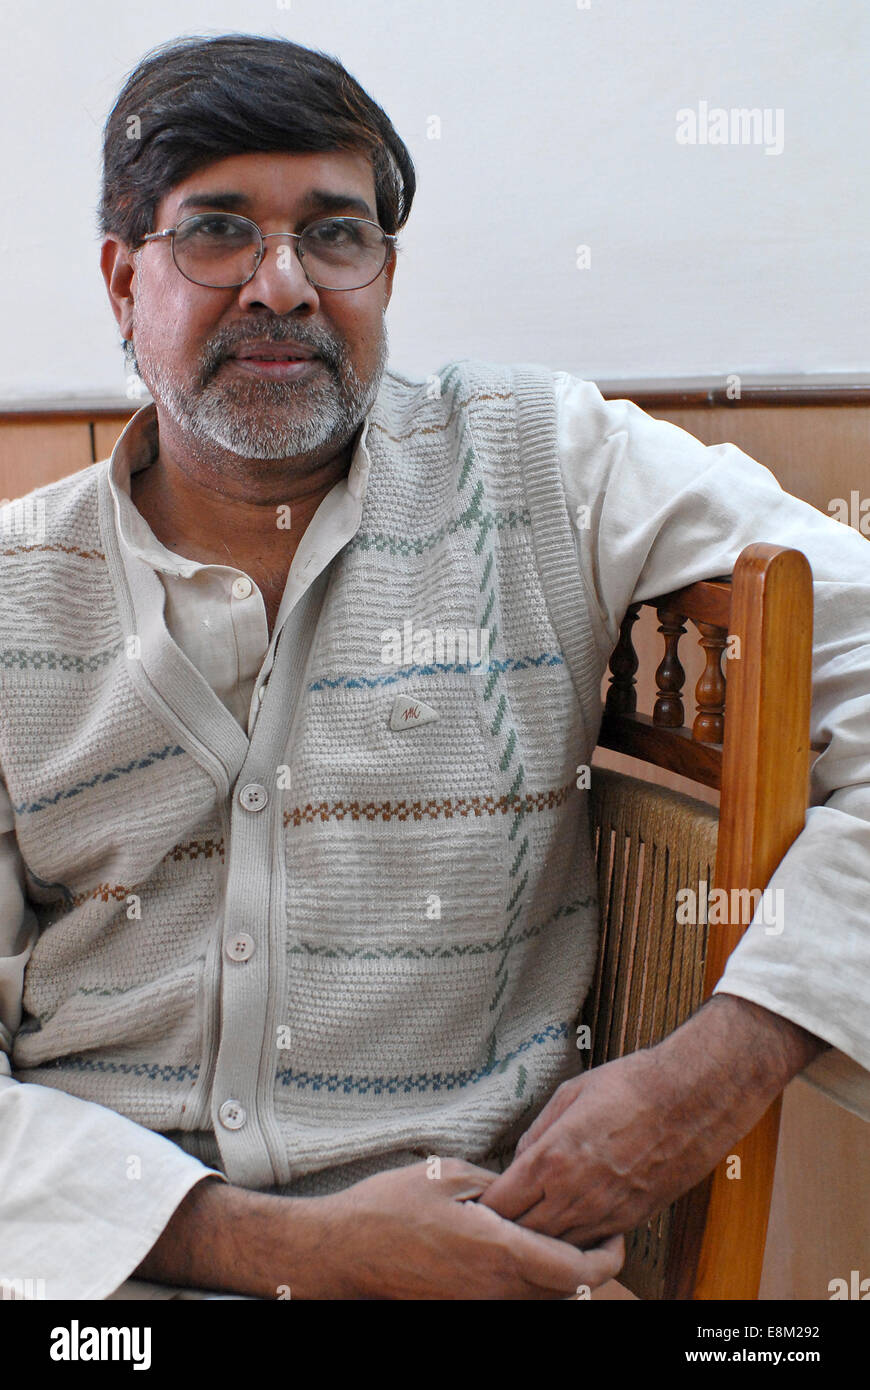 Inde Rajasthan, Bal ashram pour sauvé enfant travailleur, militant des droits de l'Kailash Satyarthi, fondateur et directeur de la SACCS BBA/ONG qui lutte pour les droits de l'enfant et contre le travail des enfants, il a reçu 2014 avec le prix Nobel de la paix , les images prises, Novembre 2006 Banque D'Images